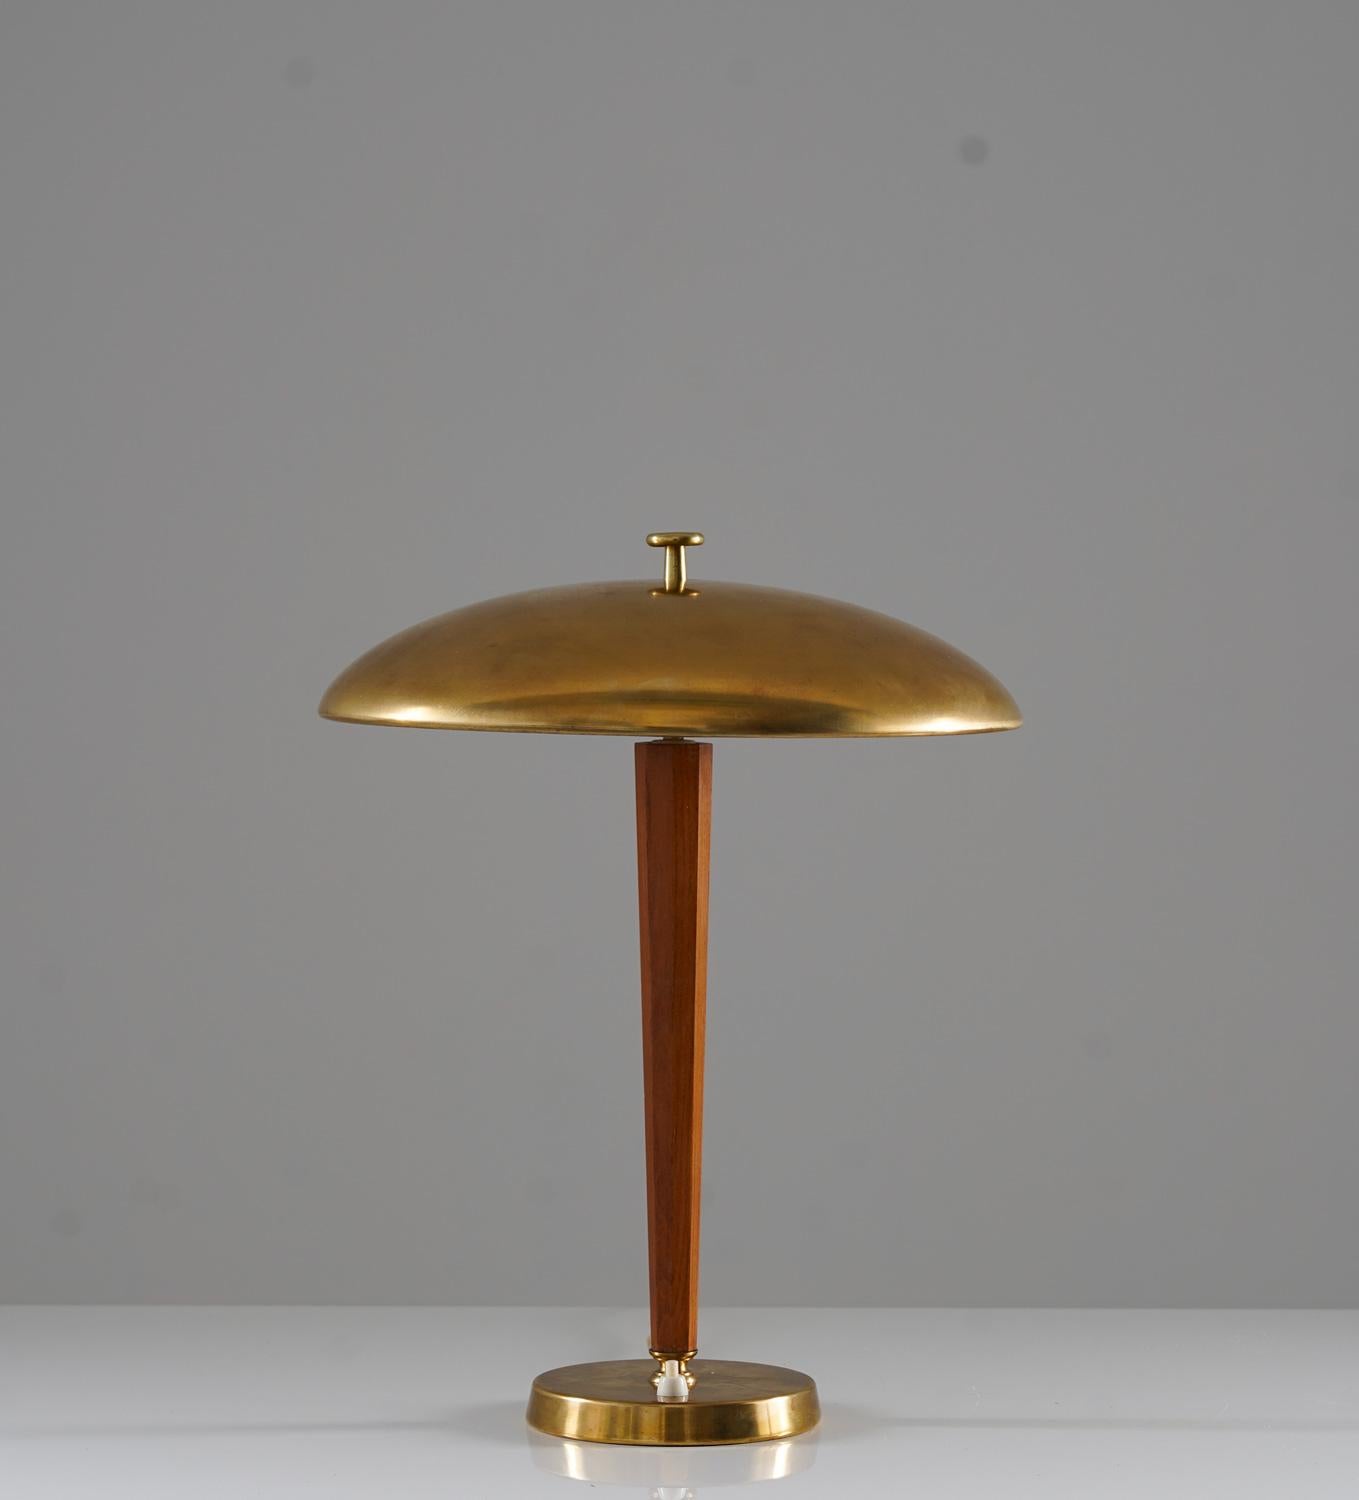 Schöne Tischlampe von Nordiska Kompaniet (NK), um 1930.
Diese Lampe ist aus Messing und Eiche gefertigt und hat einen Schirm aus dickem, massivem Messing. Der Schirm verbirgt zwei Leuchtmittel (E27, 25w). 


Zustand: Guter Originalzustand mit